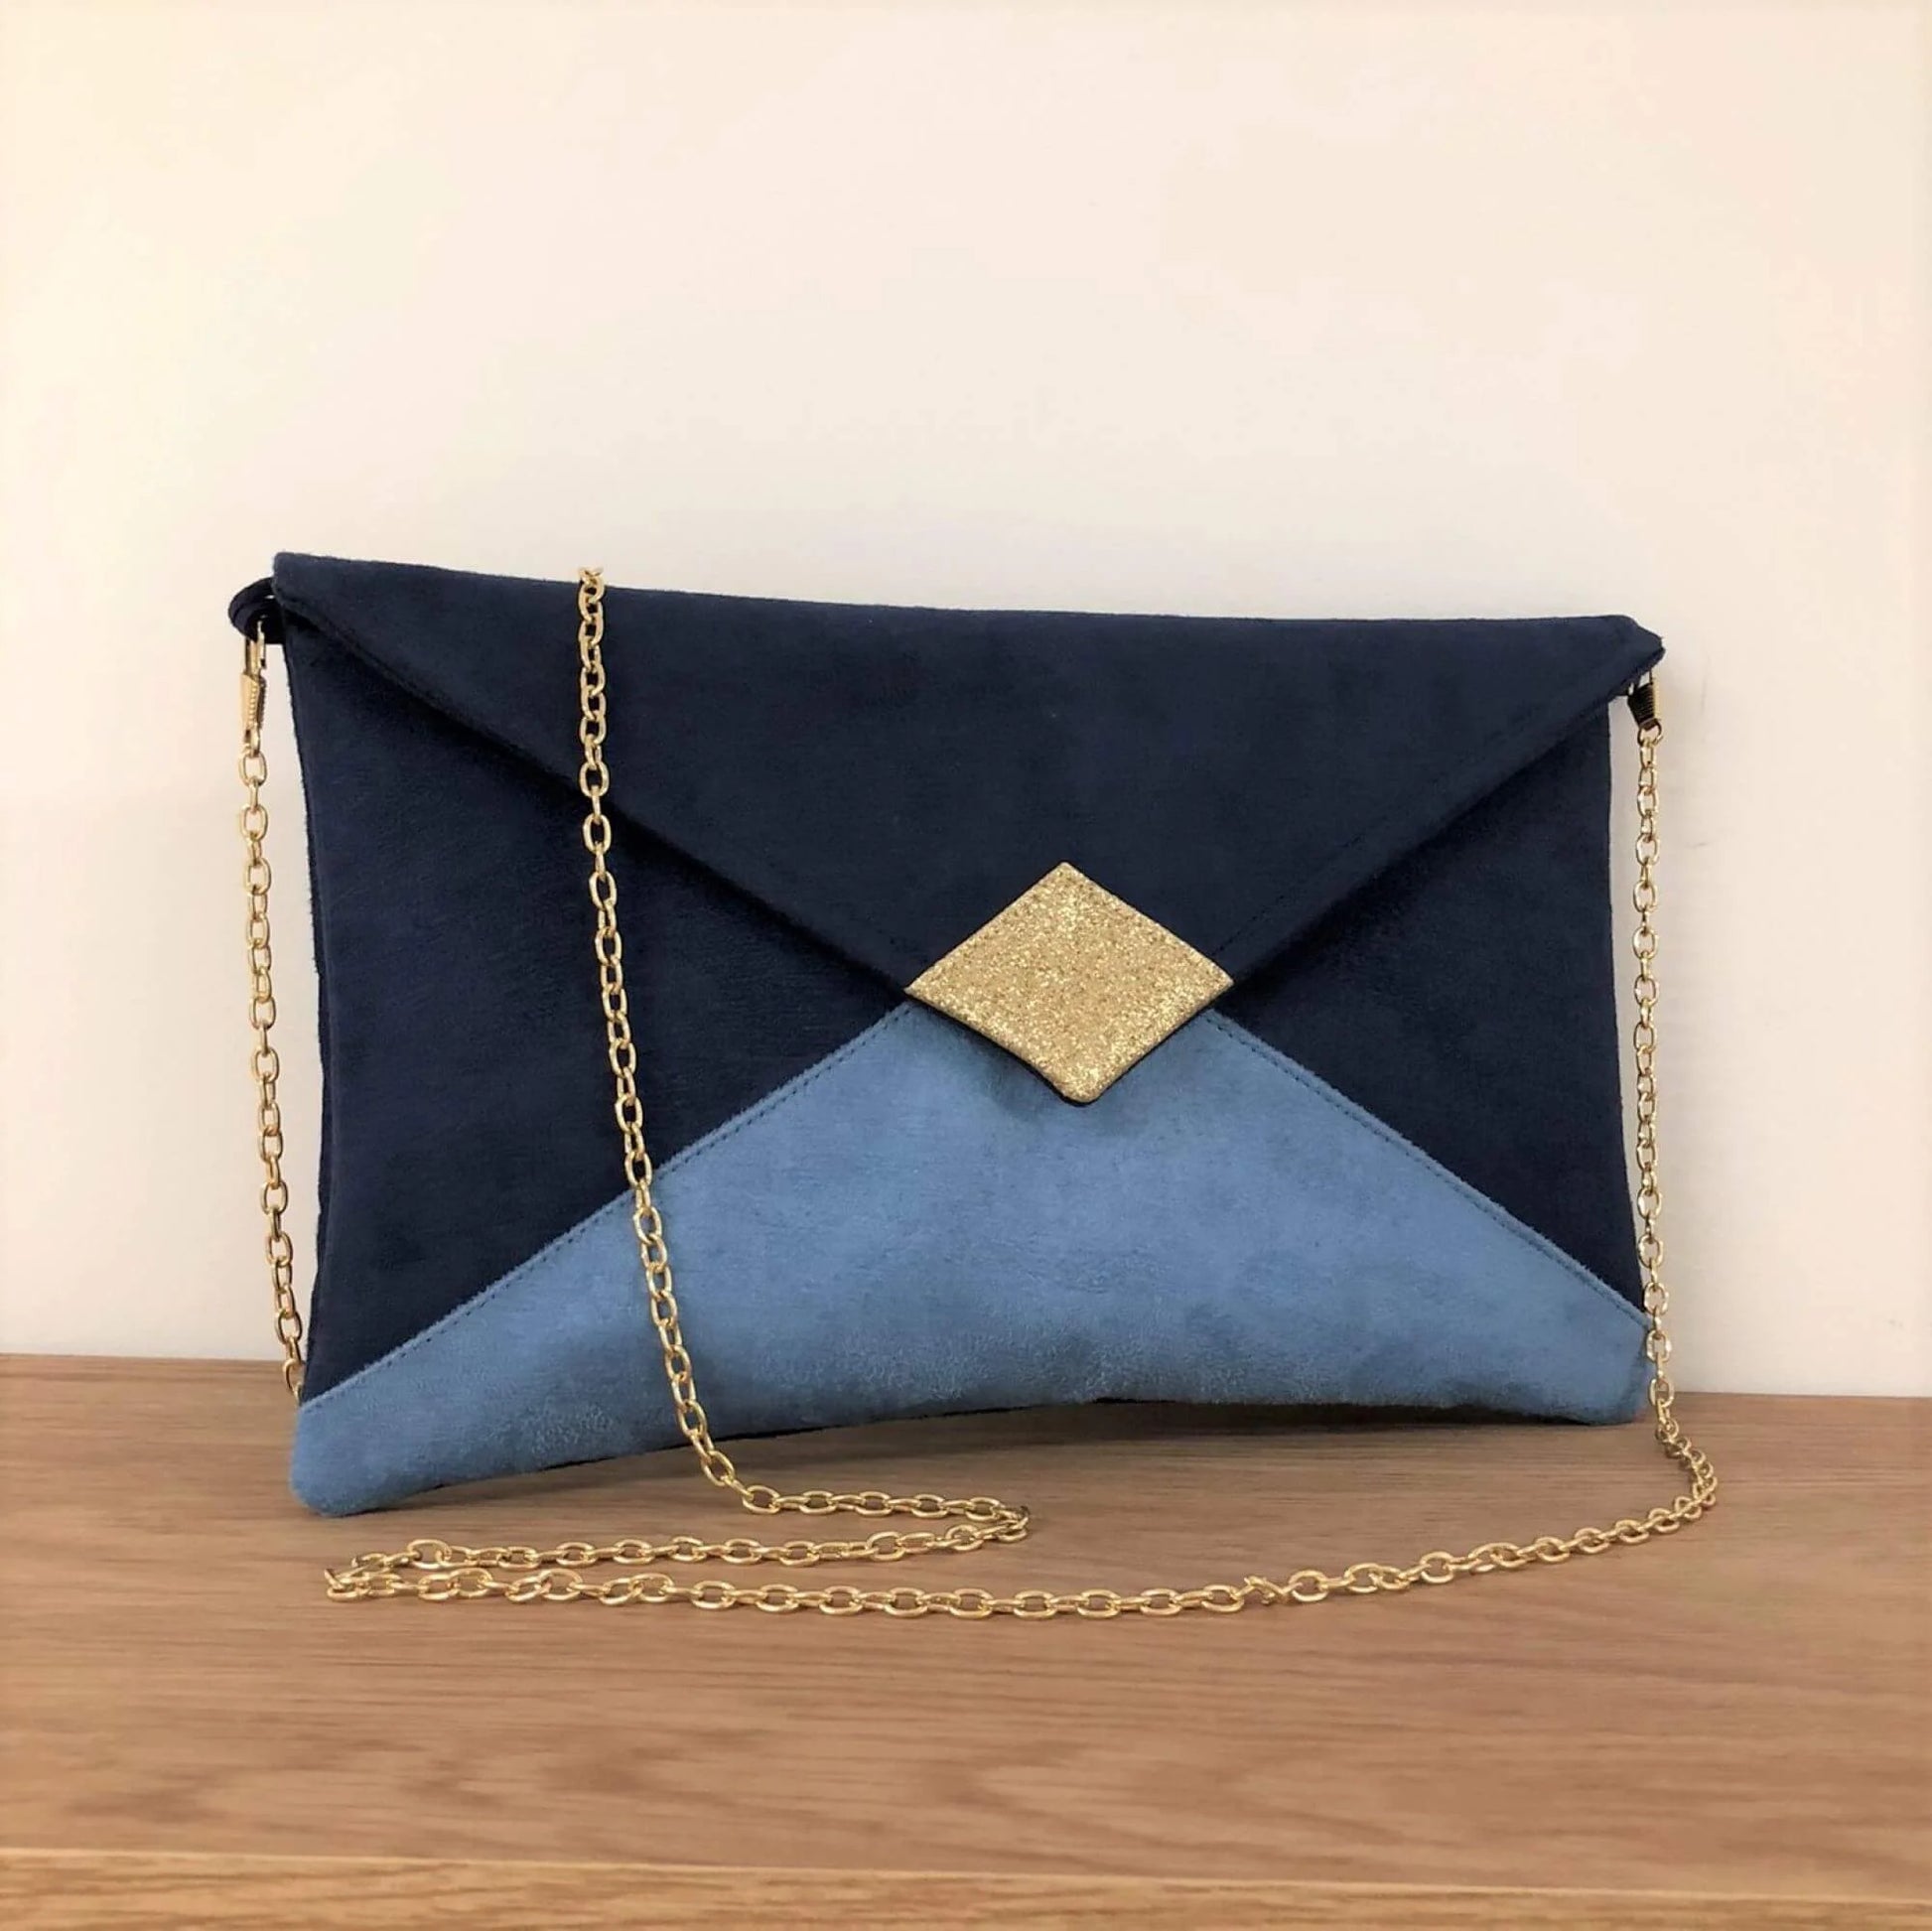 Le sac pochette Isa bleu marine et bleu ciel à paillettes dorées, avec chainette amovible.